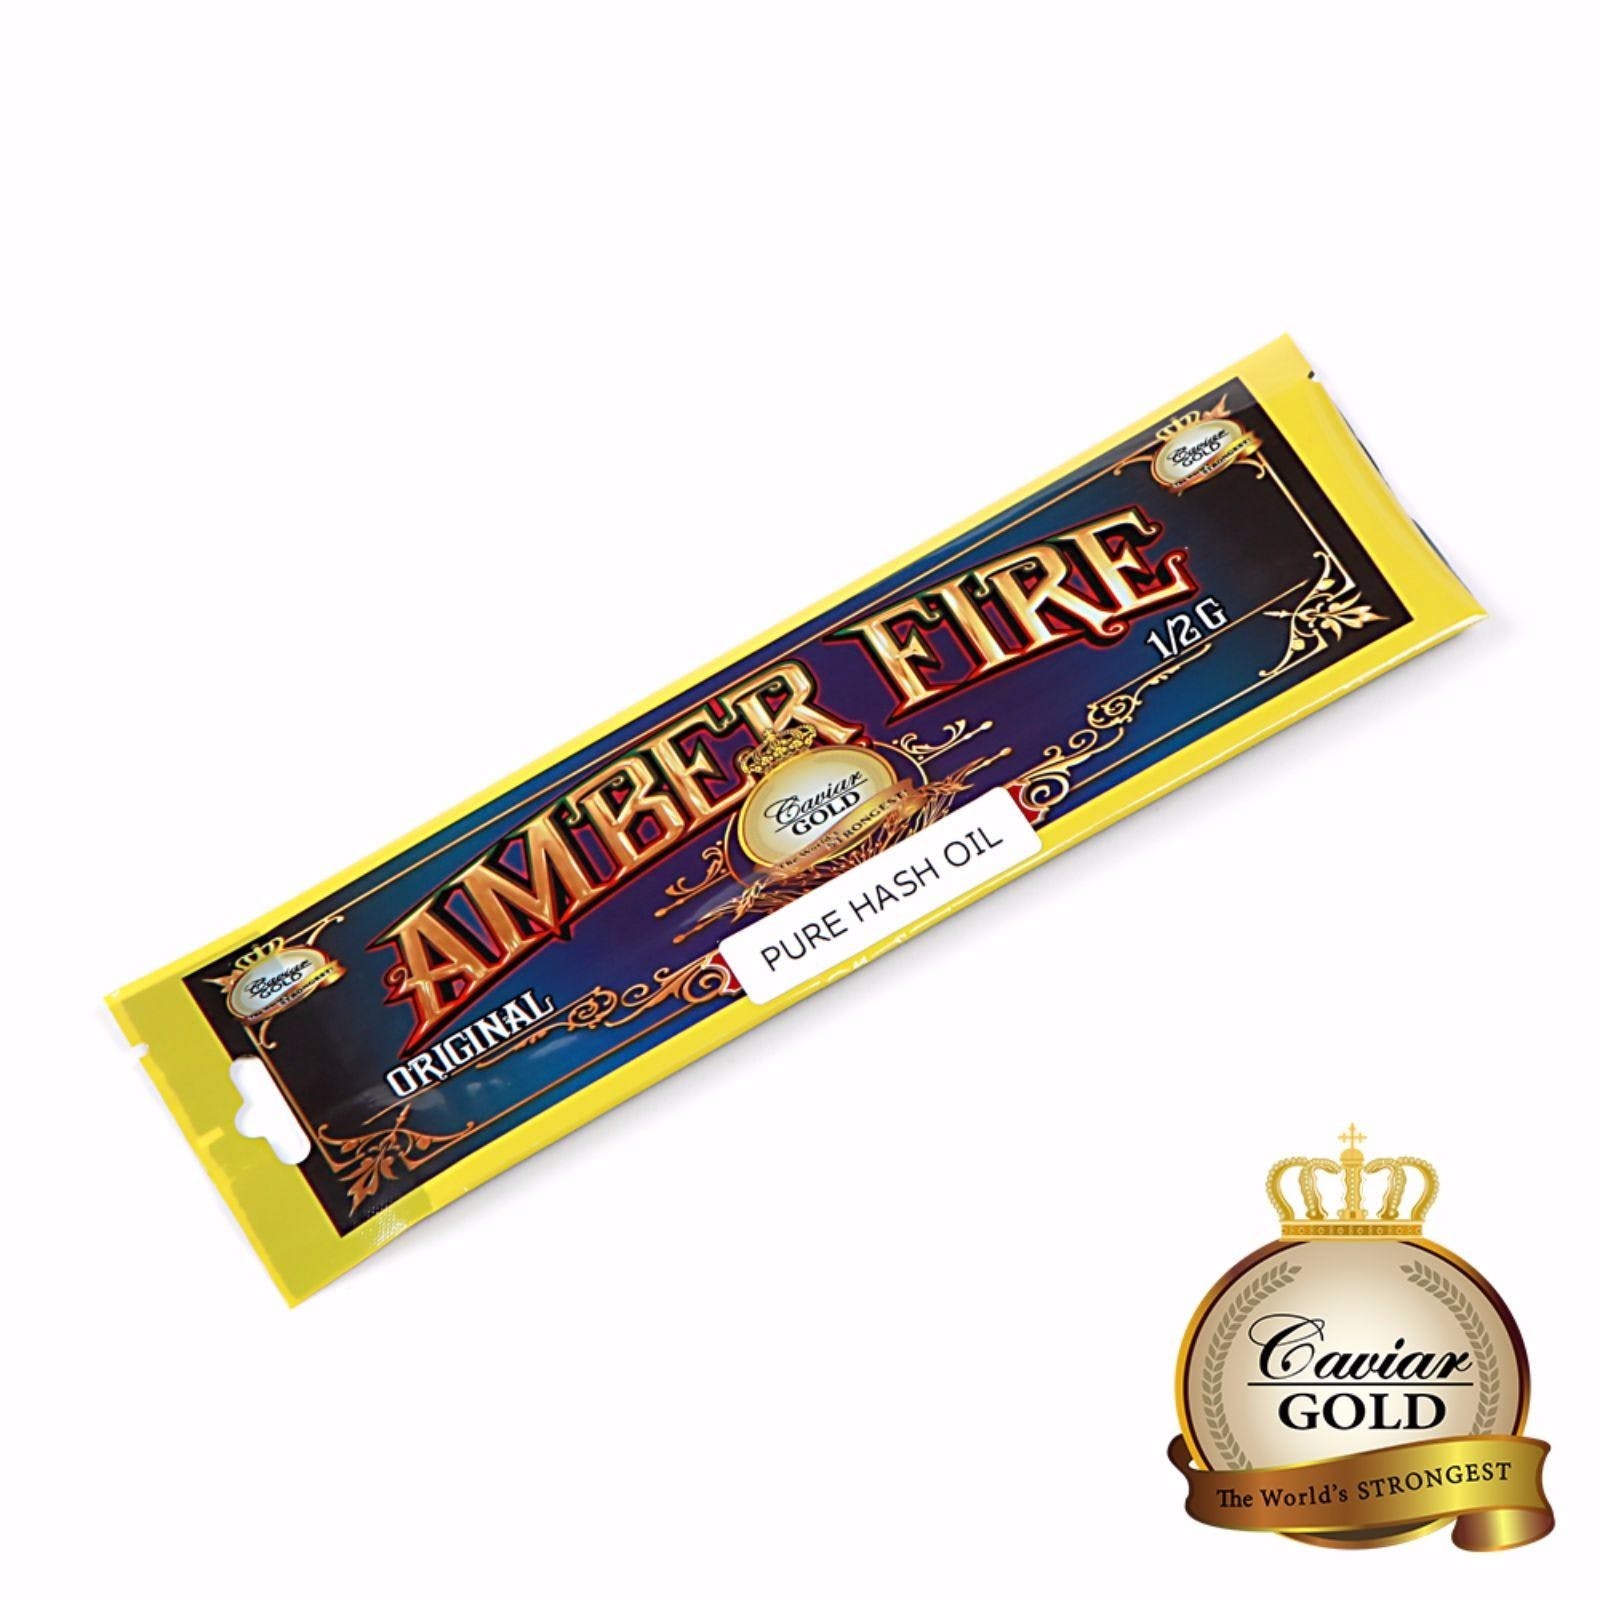 CAVIAR GOLD | Original Amber Fire Hash Oil